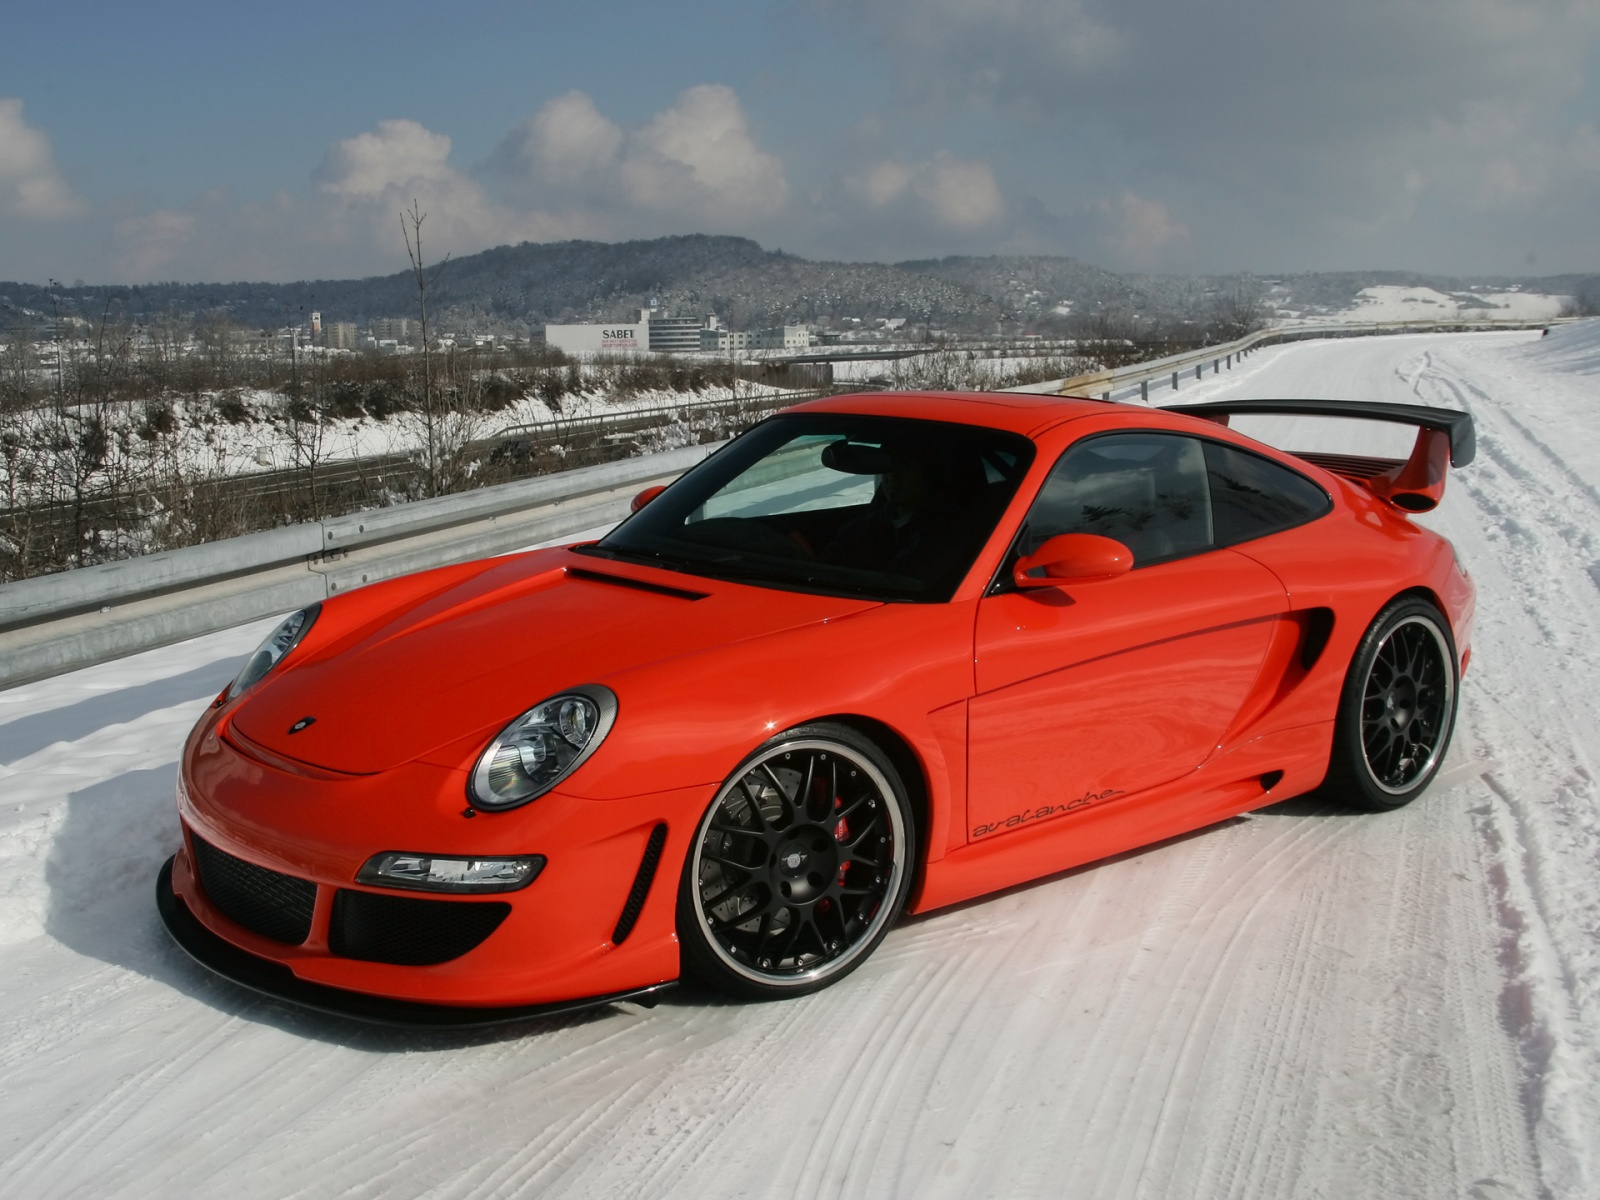  Porsche Snow Drift wallpapers Red Porsche Snow Drift stock photos